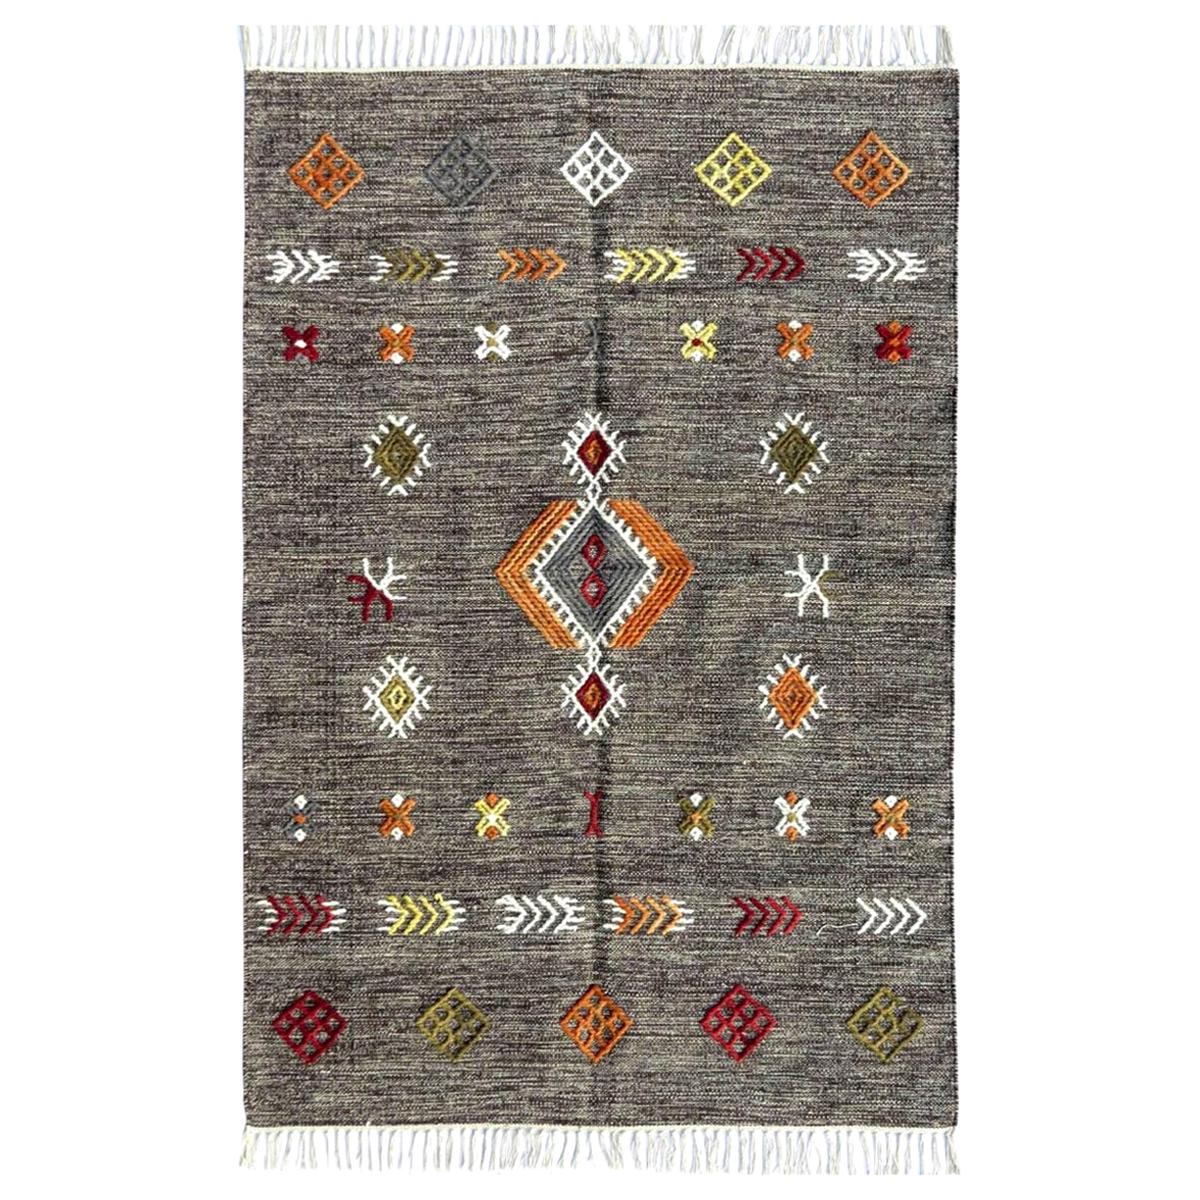 Schöner handgewebter Kelim-Teppich im marokkanischen Stammesstil, schönes neues Design